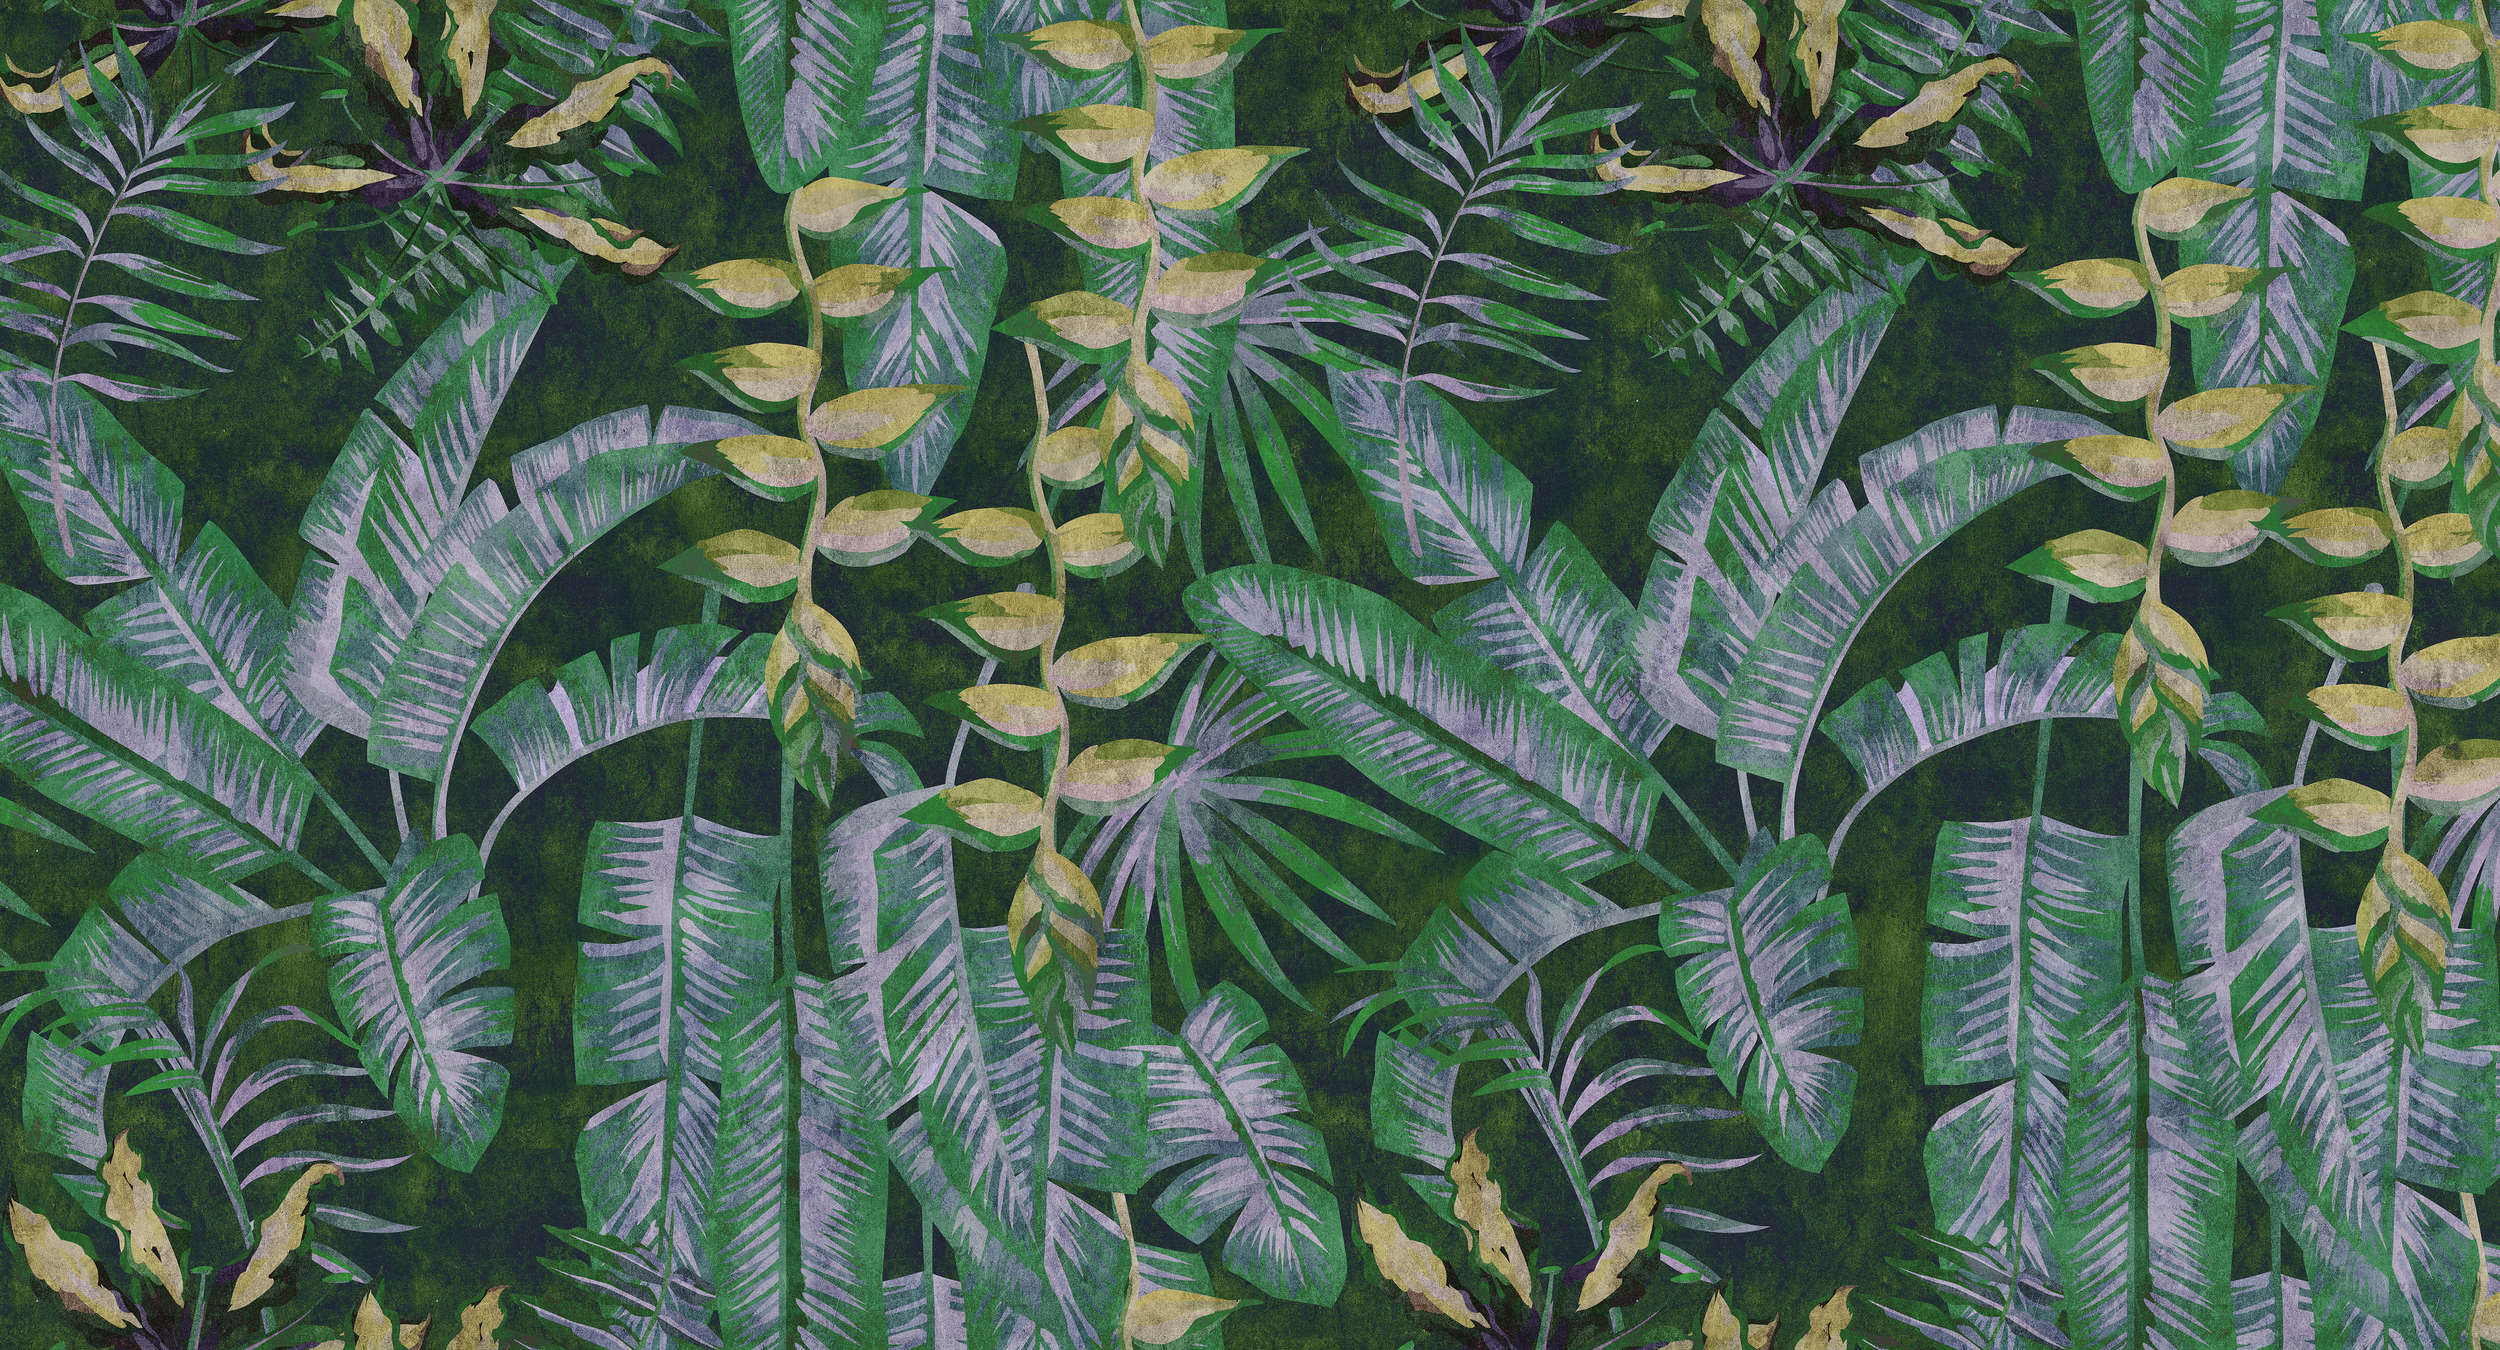             Tropicana 2 - Carta da parati con stampa digitale di piante tropicali con struttura in carta assorbente - giallo, verde | tessuto non tessuto liscio opaco
        